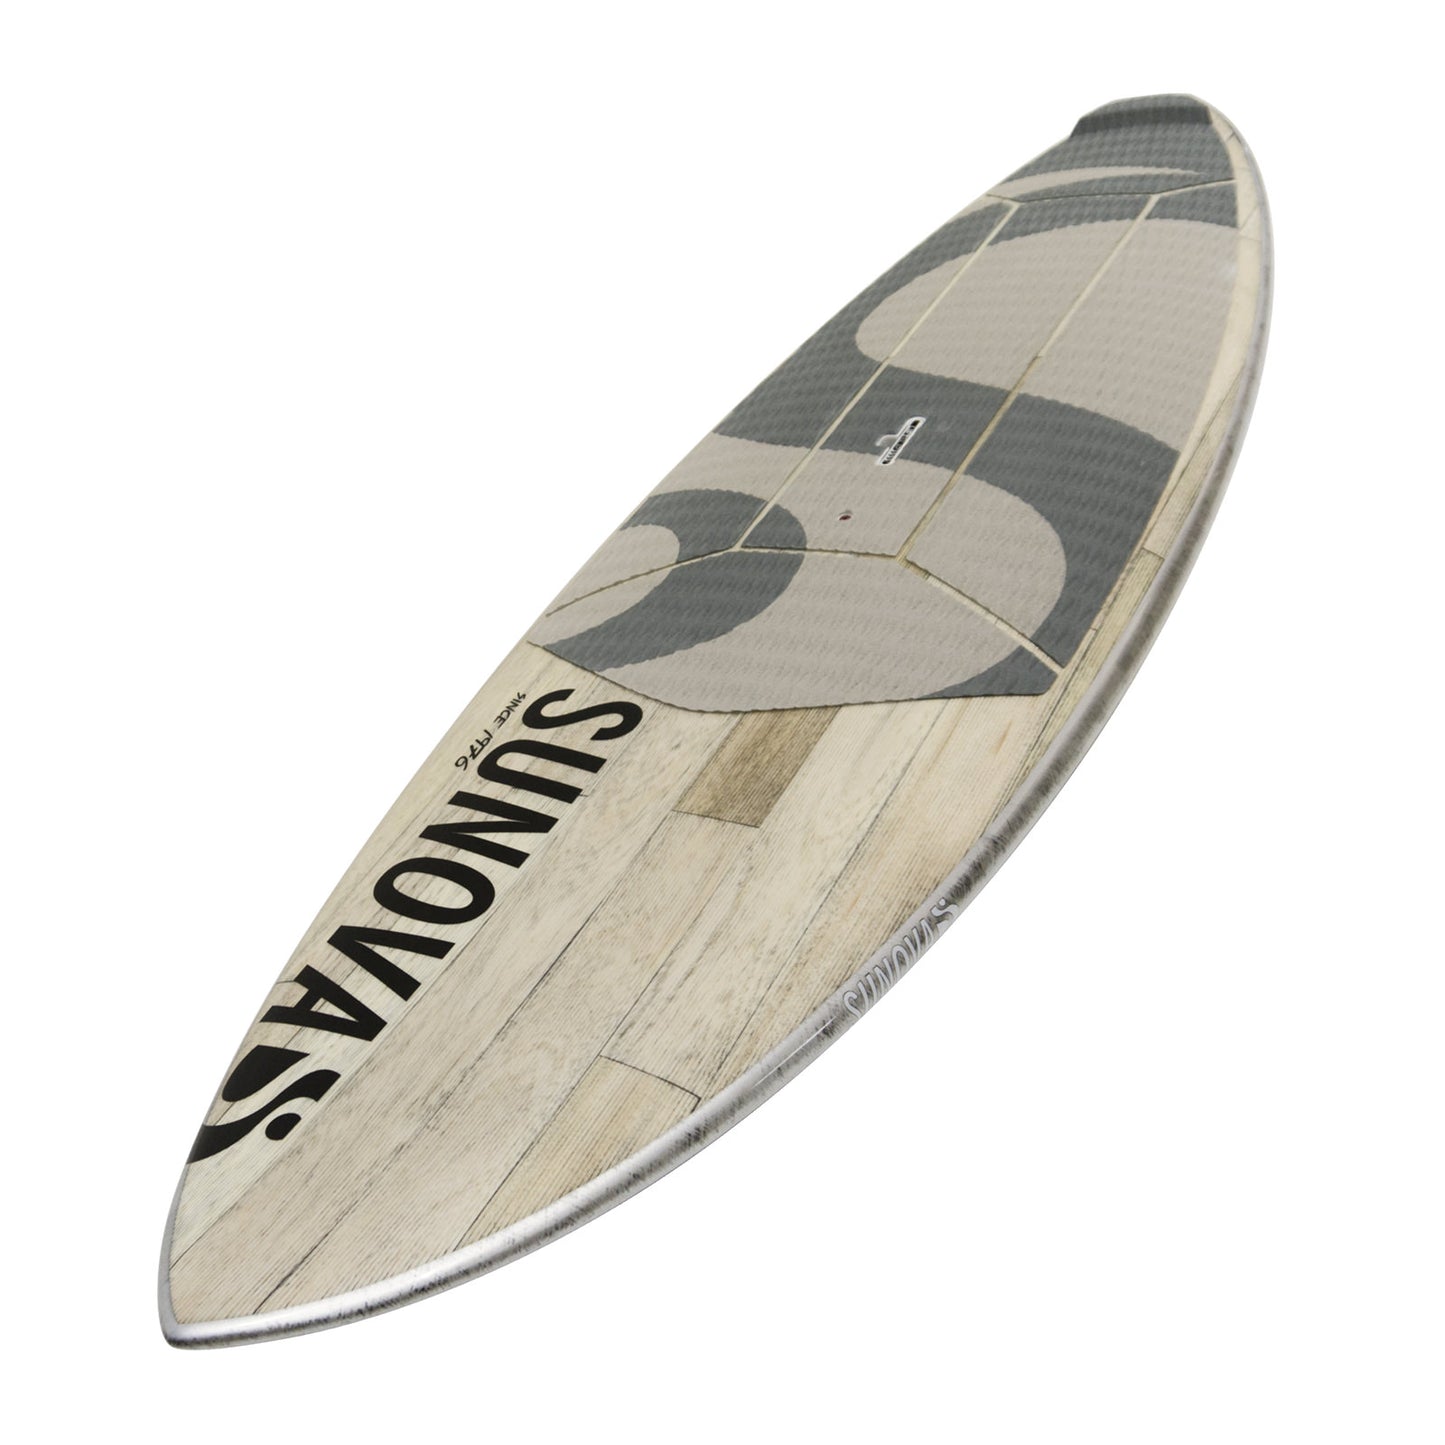 Perspektivische Ansicht des Sunova Flash Wave SUP Board in der XXX Bauweise.